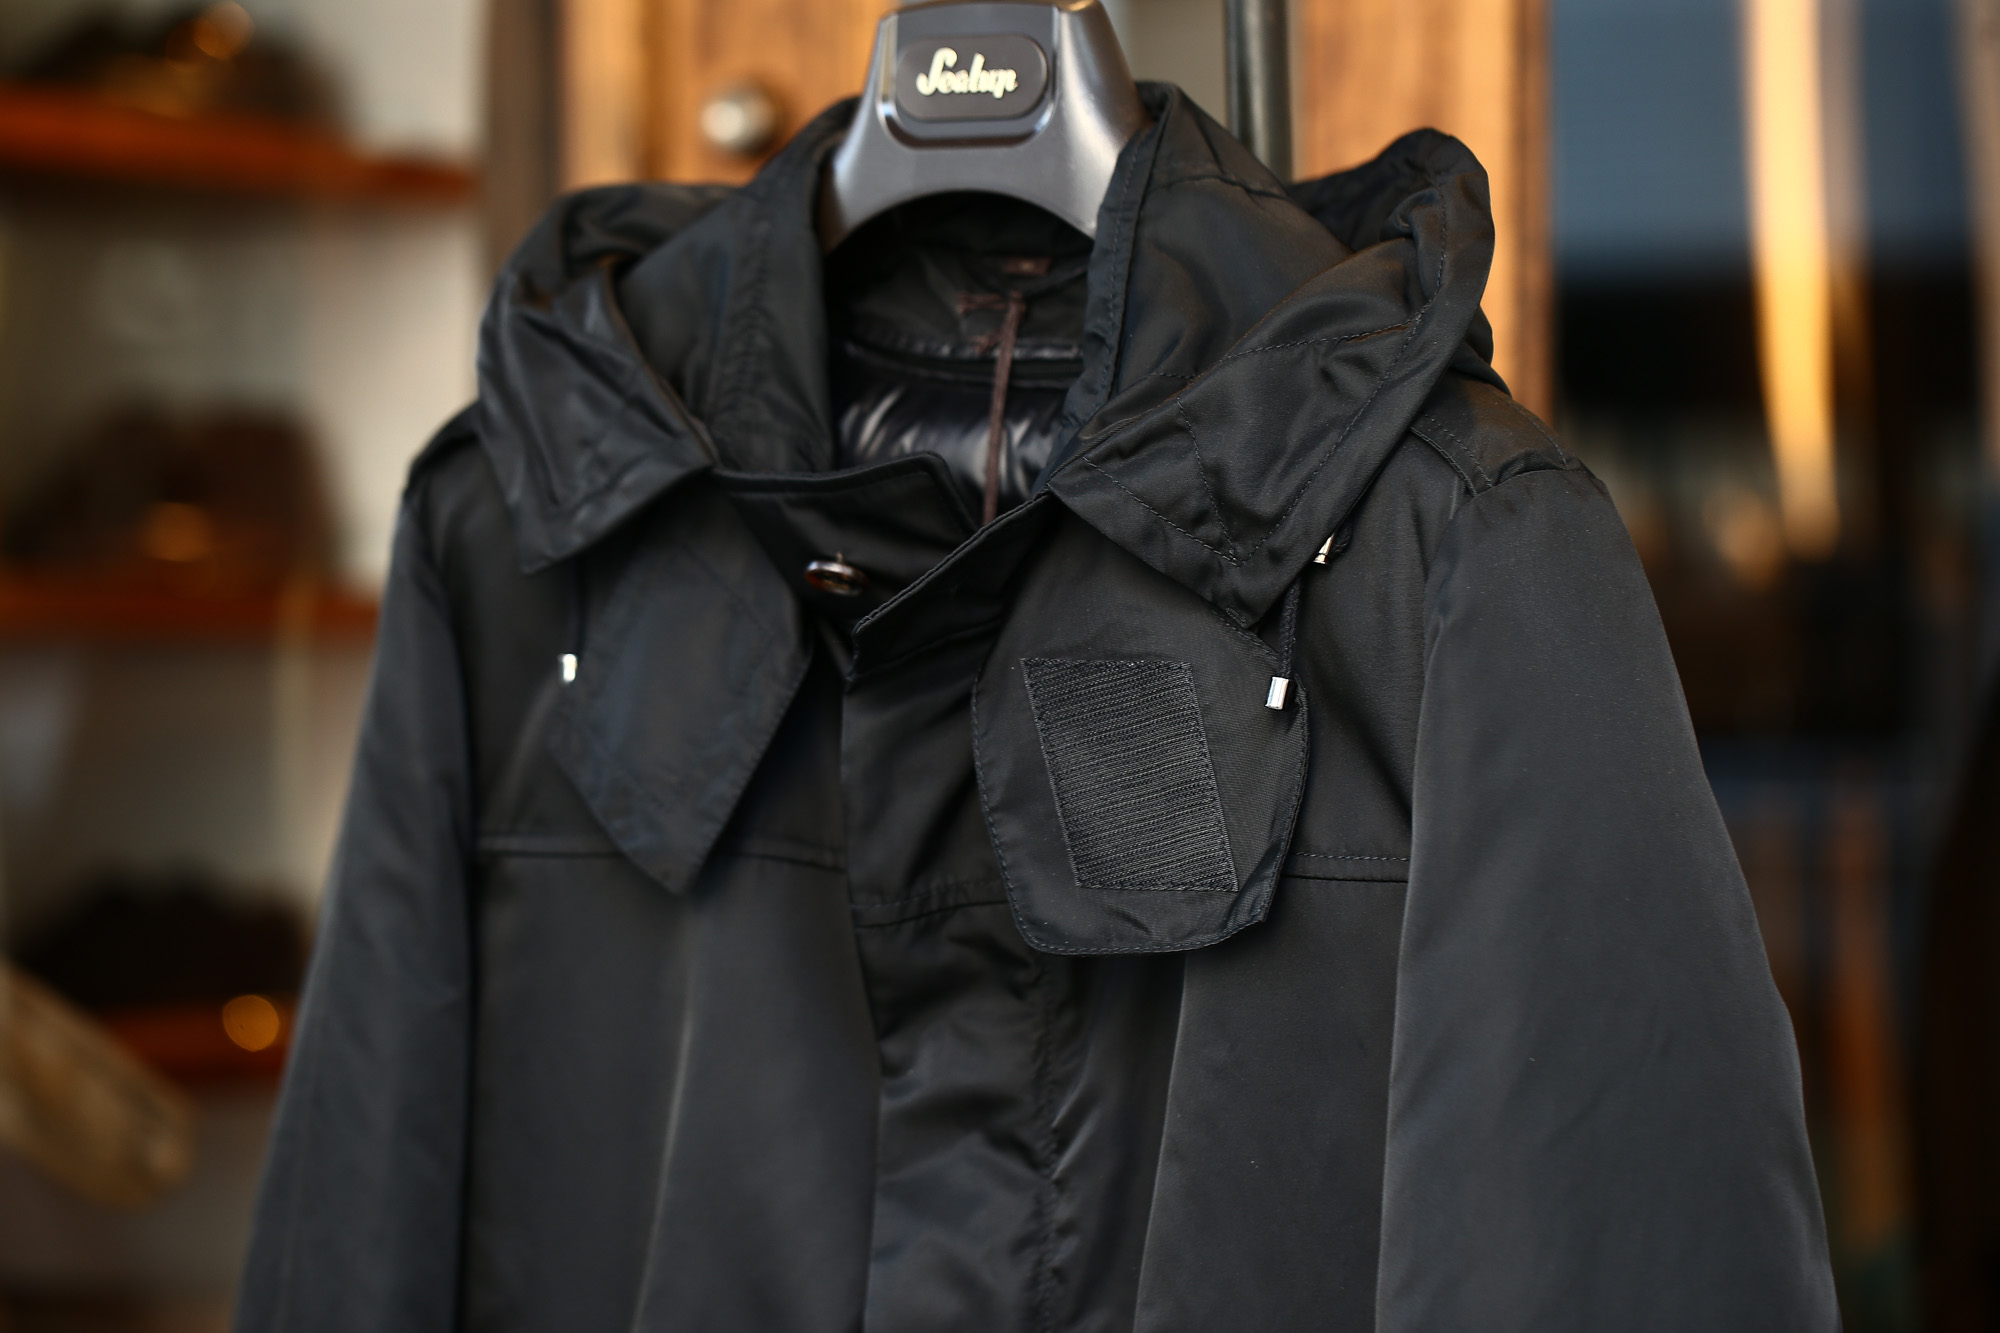 Sealup (シーラップ) M51 Mods coat (M51 モッズコート) サーモア